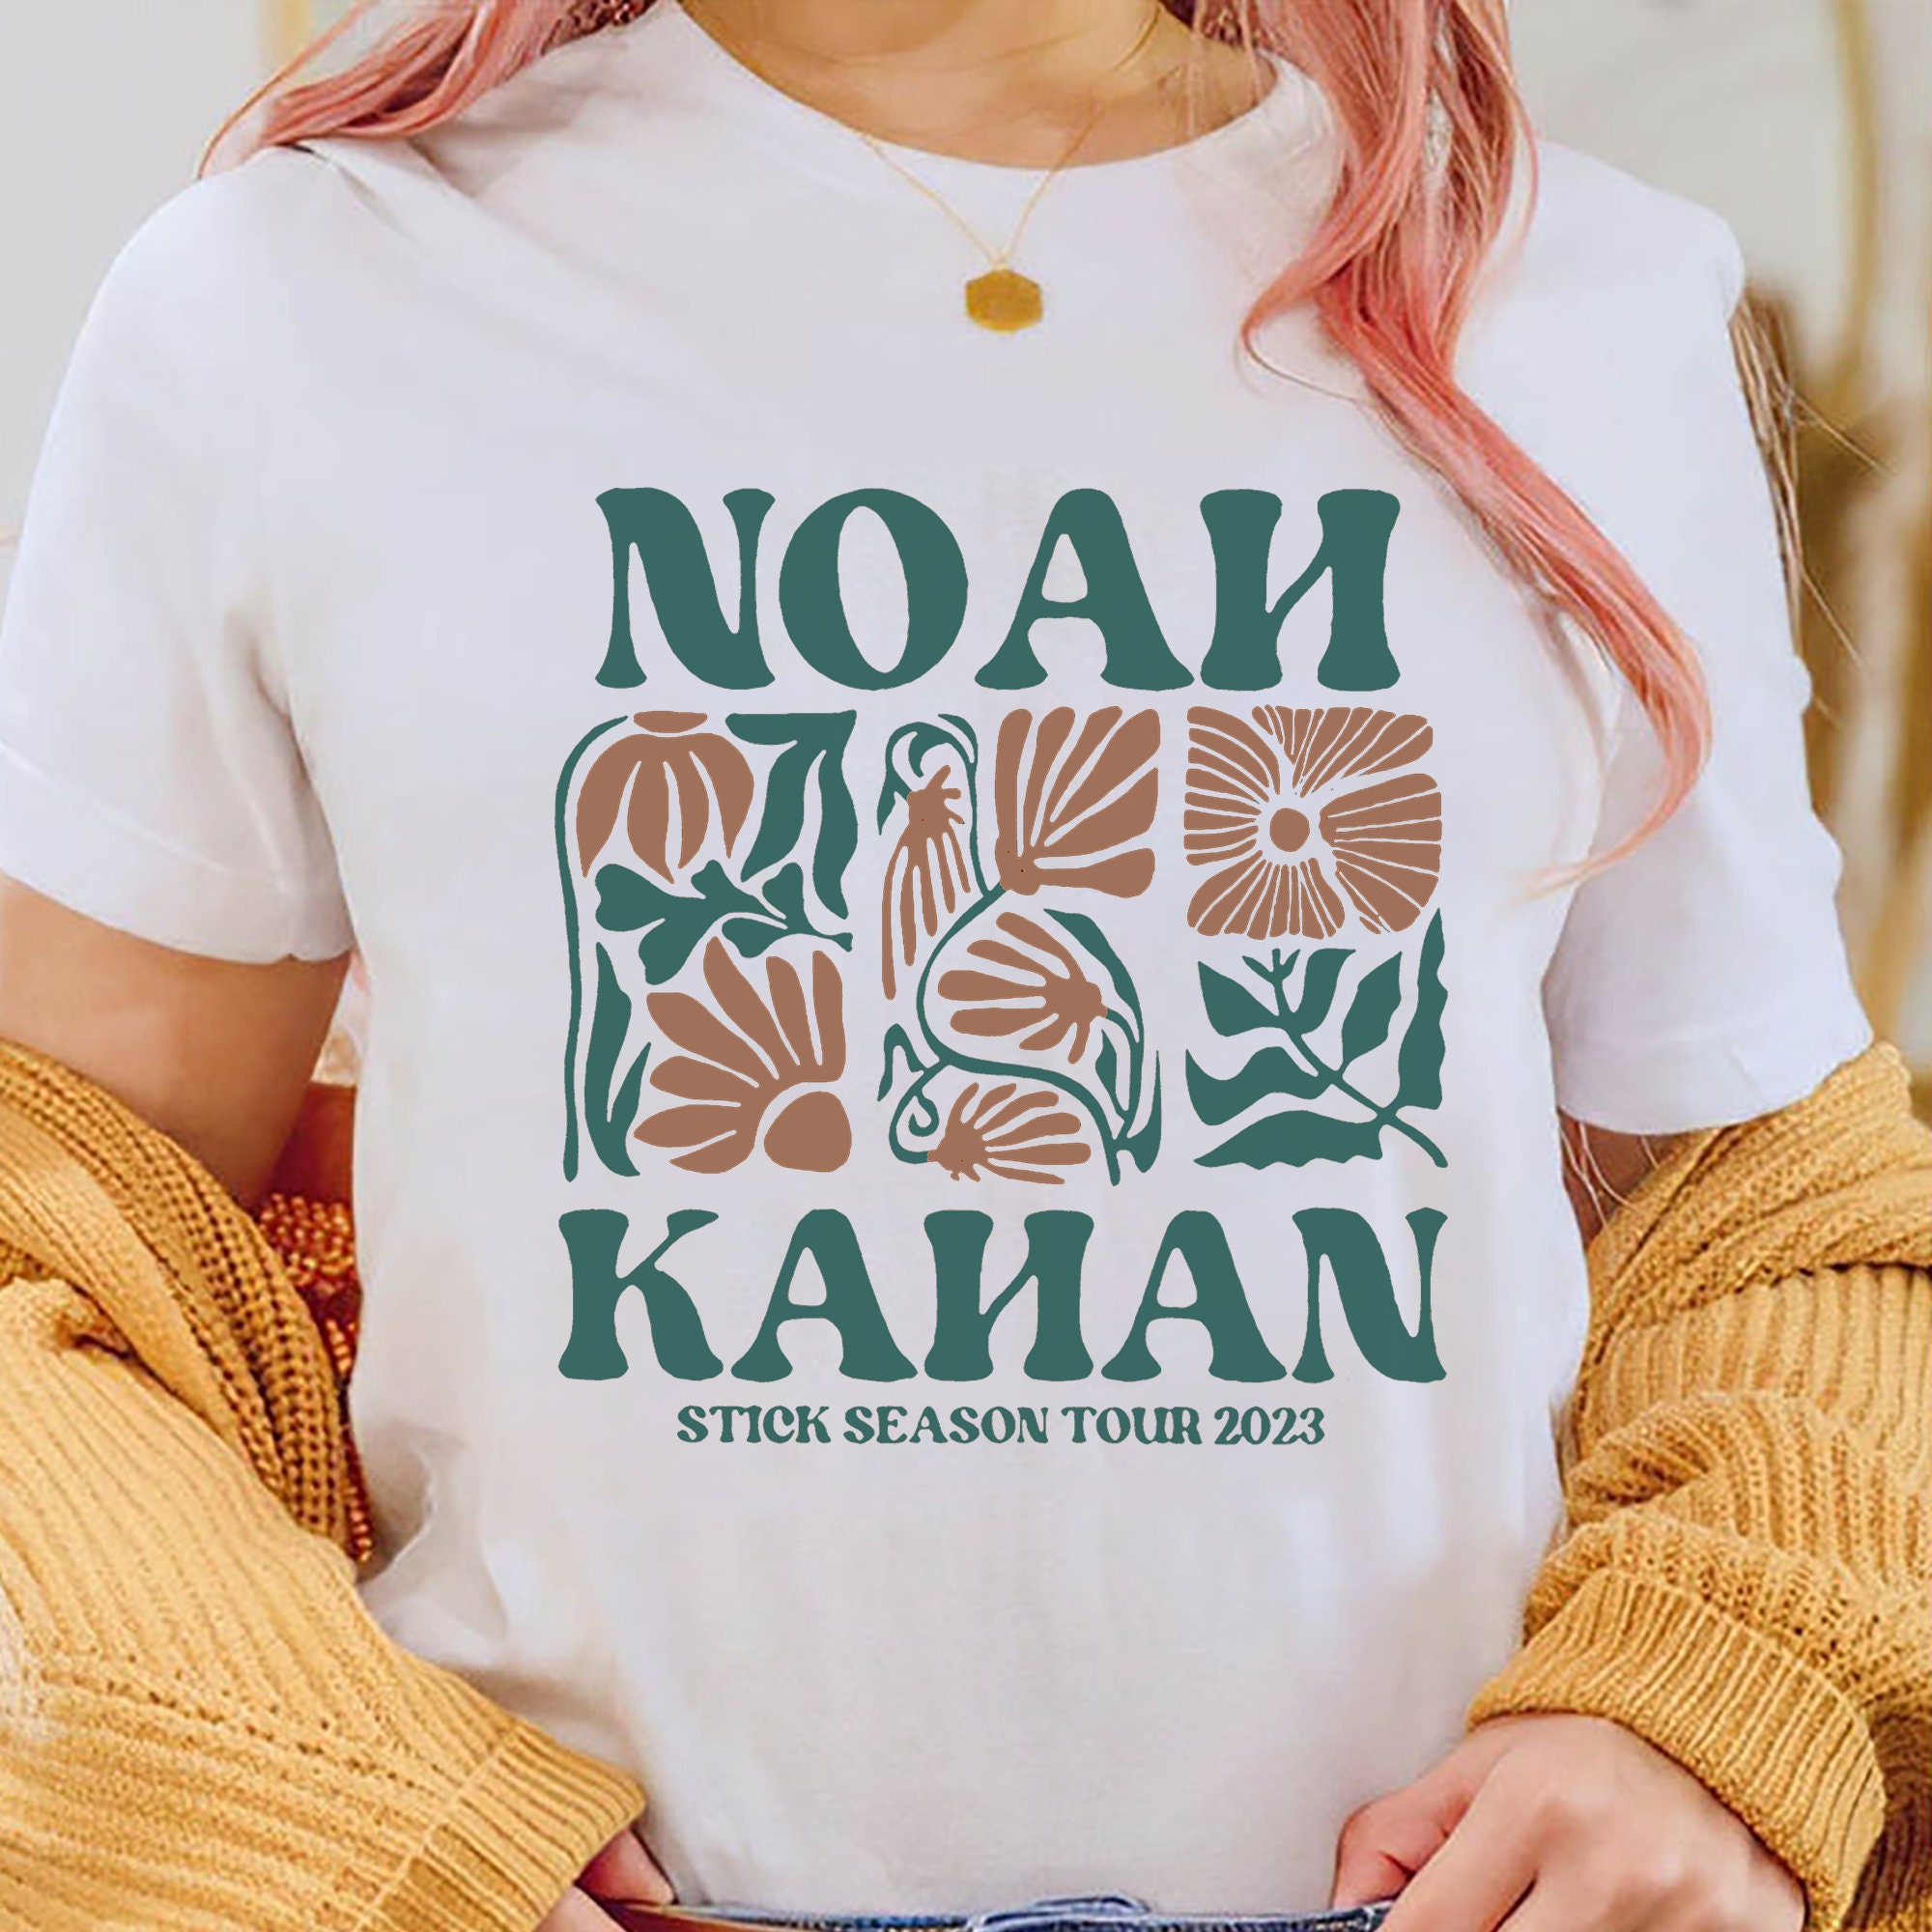 Instant Download No.ah Kahan Stick Season 2023 Tour Shirt, Noah Ka.han ...